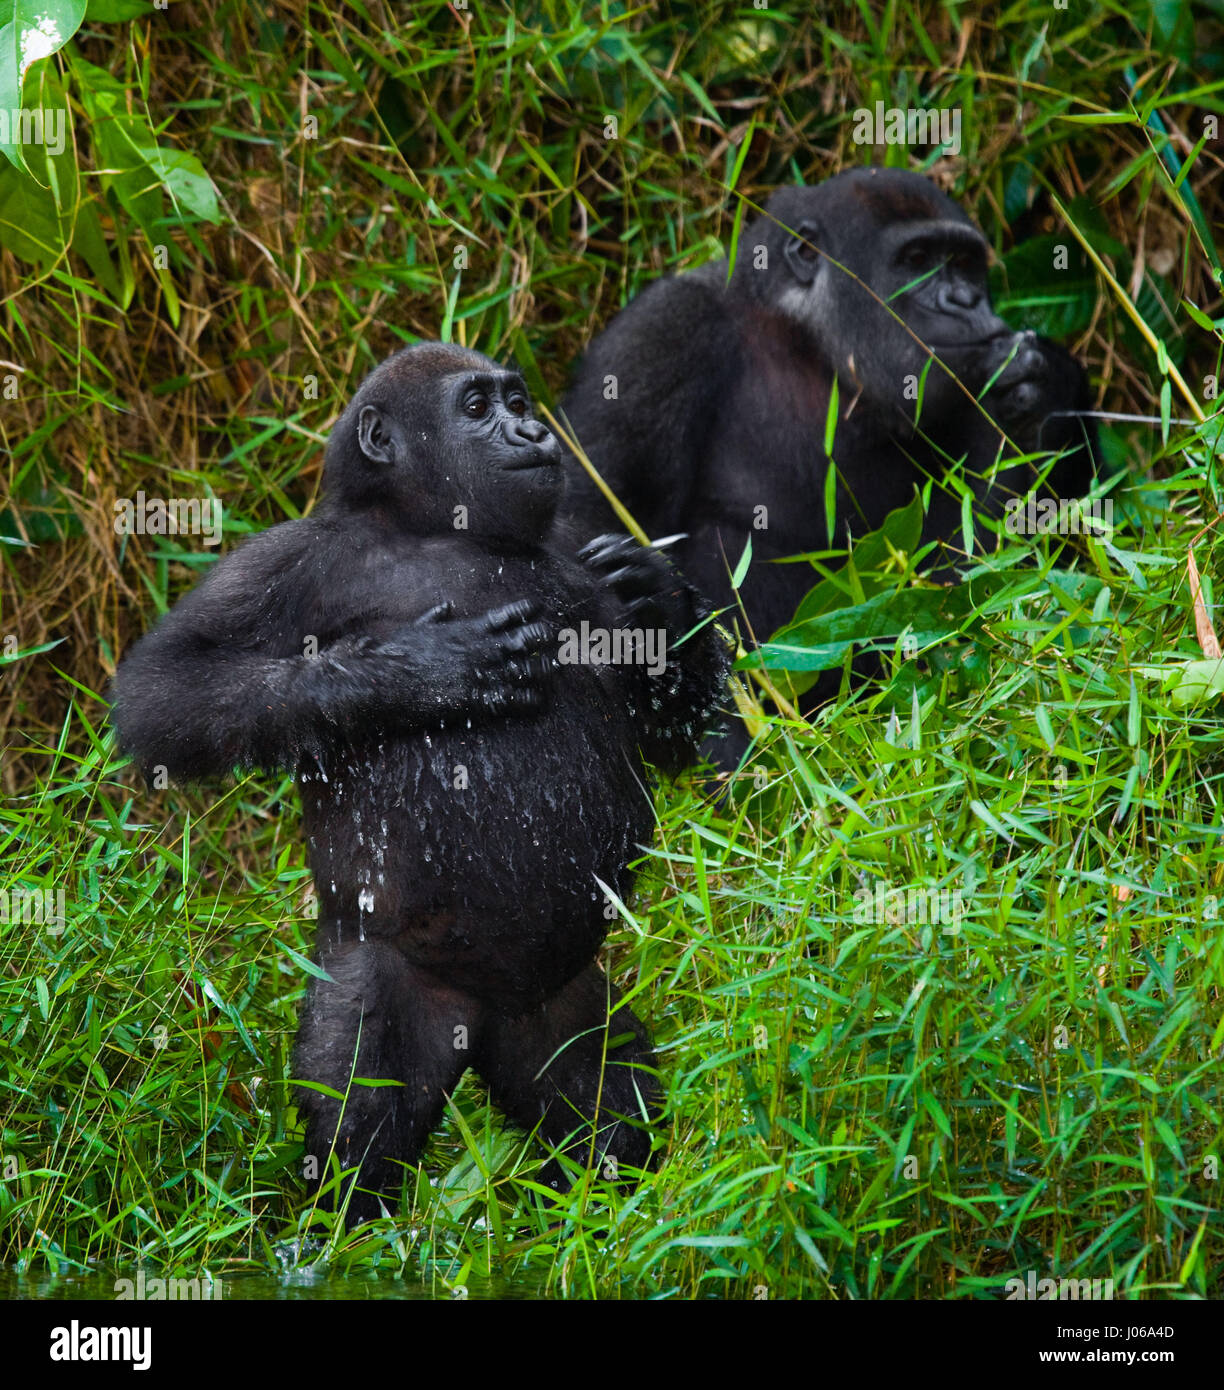 BWINDI Nationalpark, UGANDA: Ein Gorilla übte einen großen Knüppel wie eine Waffe wie er versuchte, einen Fotografen abzuwehren, die zu nahe für Komfort bekommen. Die atemberaubende Aufnahme zeigt die großen drei hundert und fünfzig Pfund Silberrücken halten den Stick auf bedrohliche Weise wie er der Fotograf schießt einen bedrohlichen Blick, als ob um zu sagen, "oughta warum ich". Andere Bilder zeigen Gorillas viel zuvorkommender drauf wie sie aus Zweigen schwingen, füttern und spielen mit ihren jungen. Einige Jugendliche Gorillas können gesehen werden, liegen wieder auf einem Ast und entspannend wie die Welt vergeht. Die Bilder wurden von Moskau Fotografen aufgenommen. Stockfoto